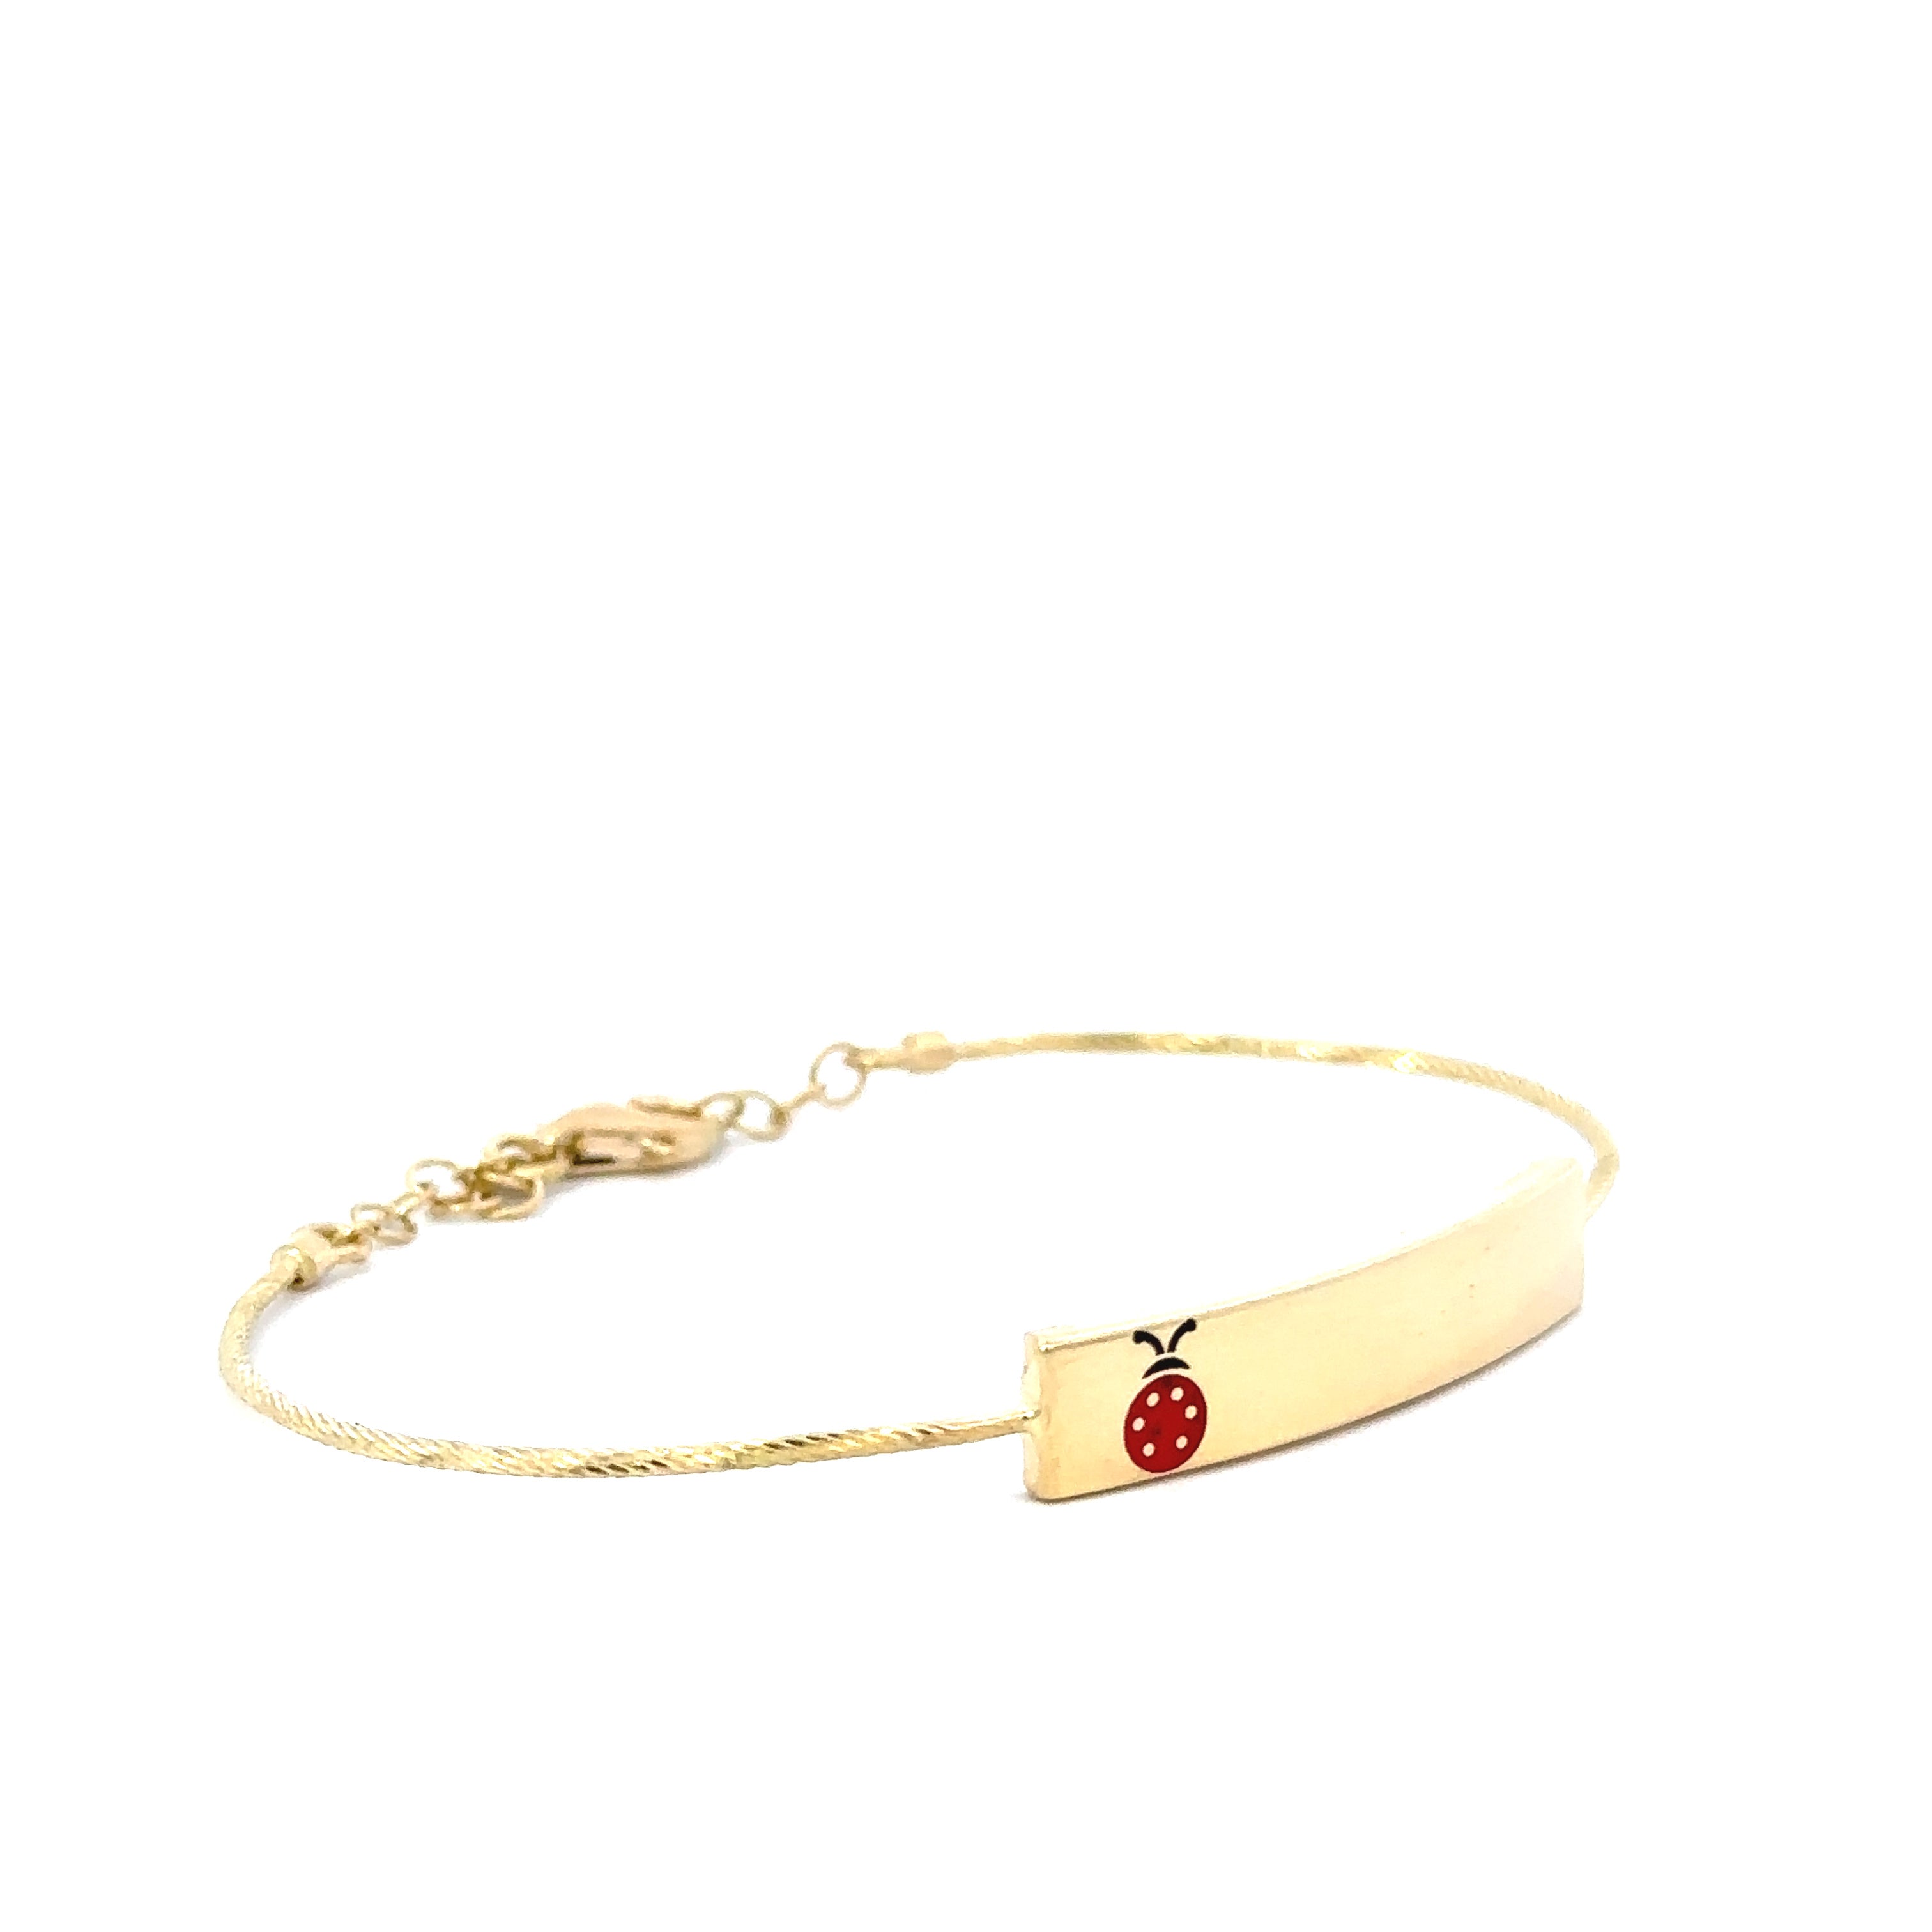 Red Lady Bug Baby Bracelet 18K Gold